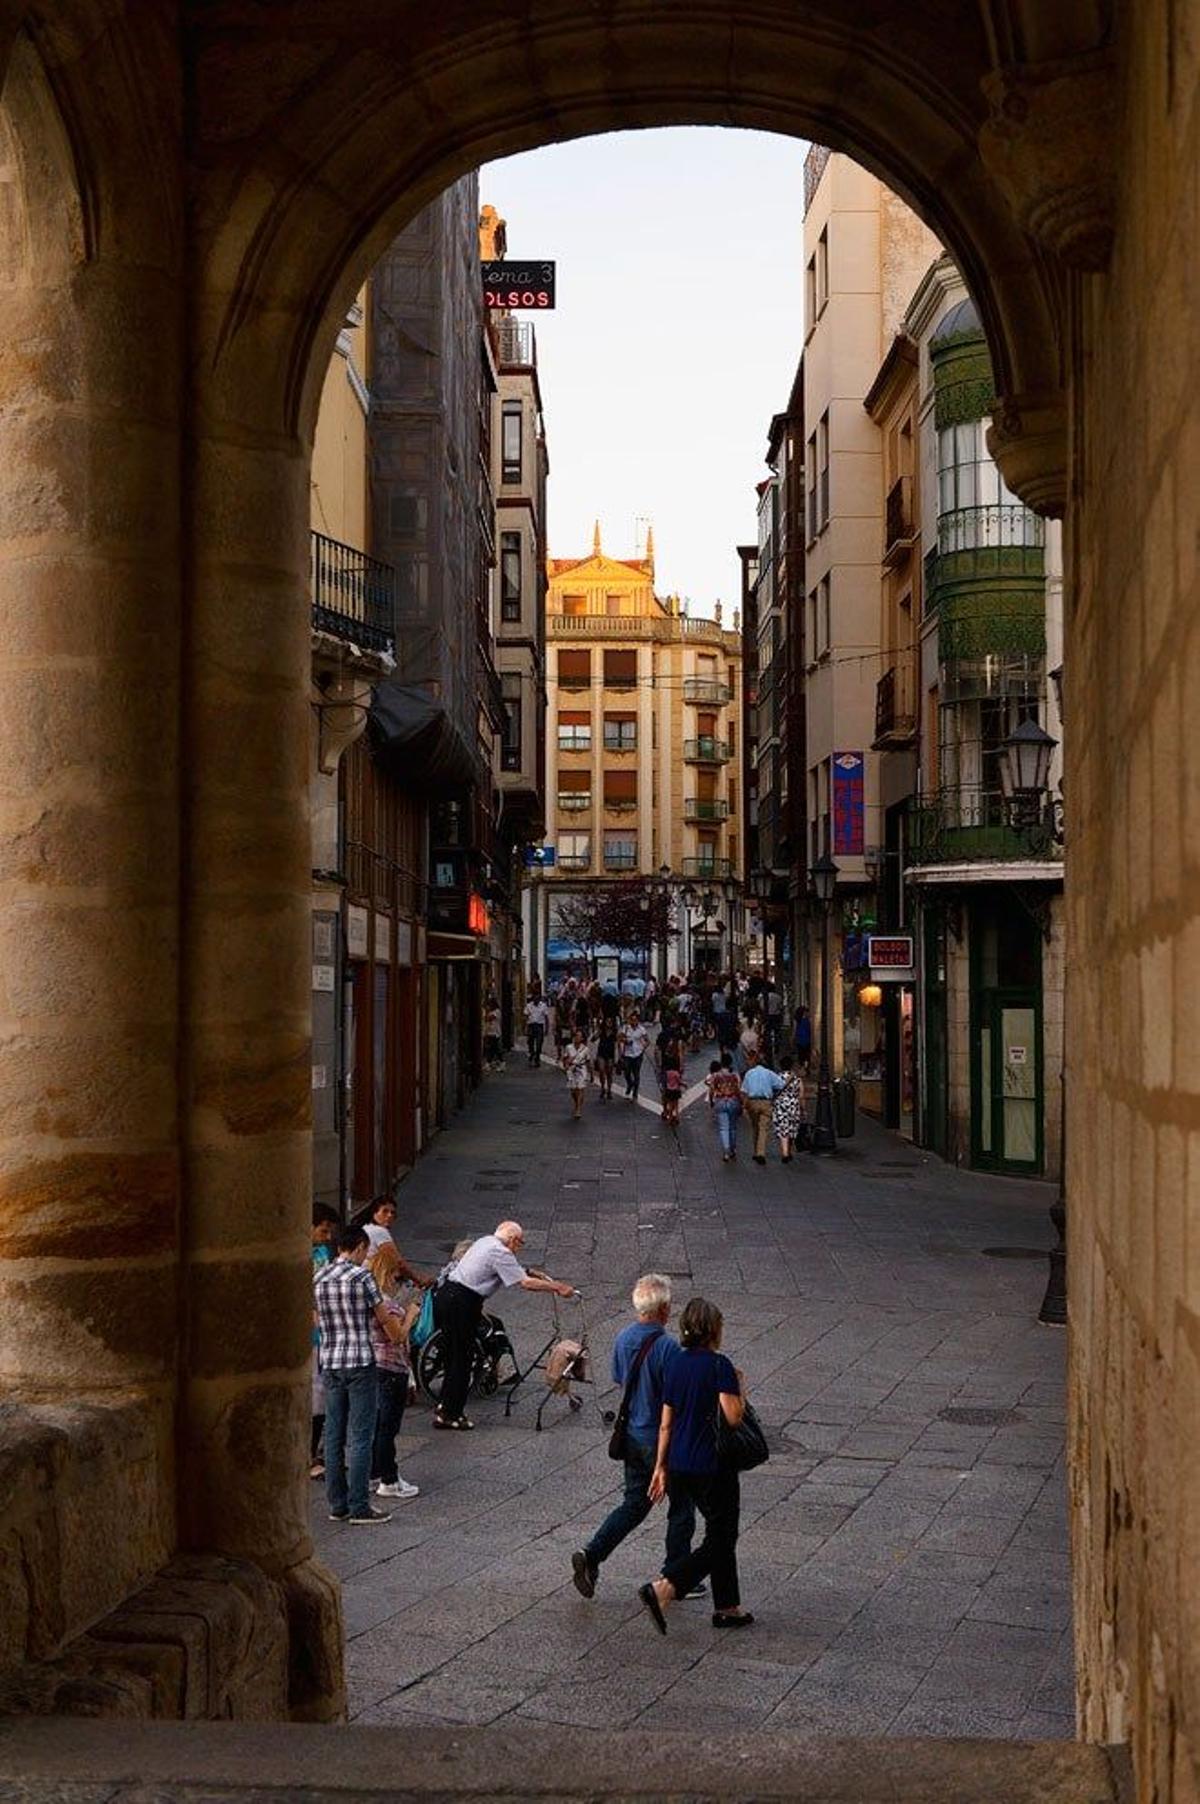 Enmarcados por los arcos del Ayuntamiento viejo, al fondo se ven los edificios de la Plaza de Sagasta, en pleno casco histórico de la ciudad.